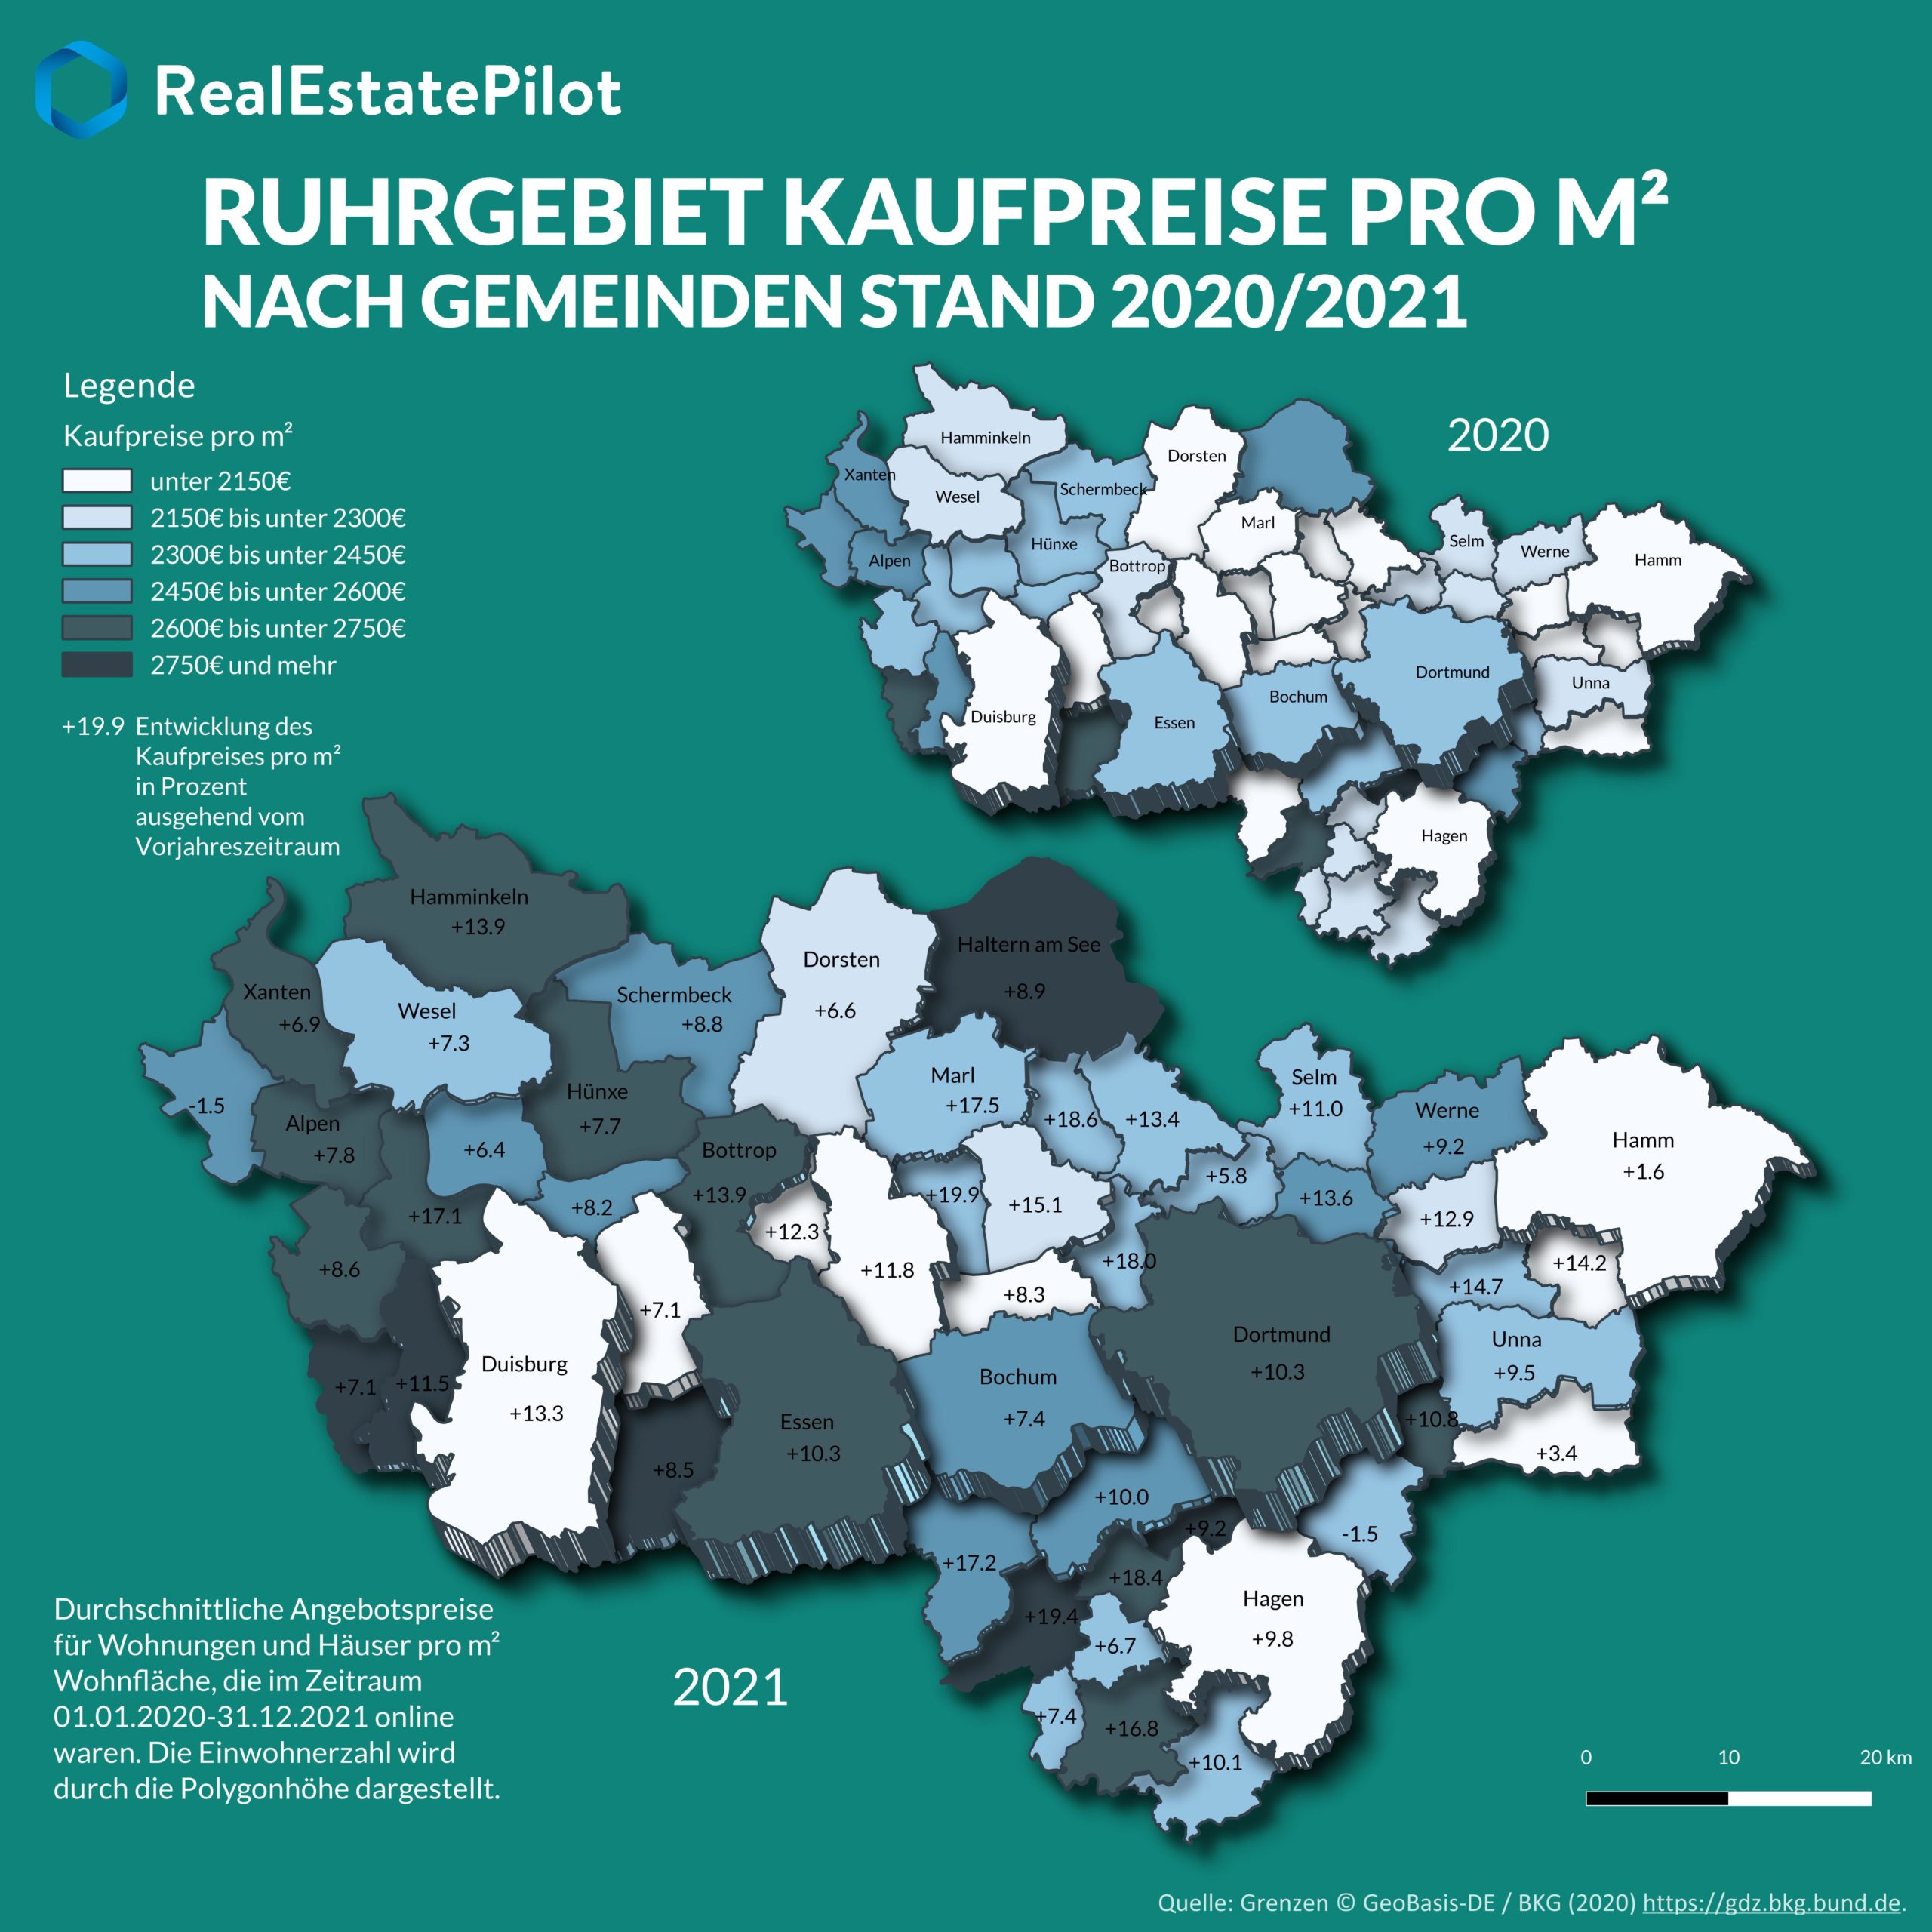 Kaufpreisentwicklung im Ruhrgebiet: Überwiegend steigende Preise in allen Gemeinden